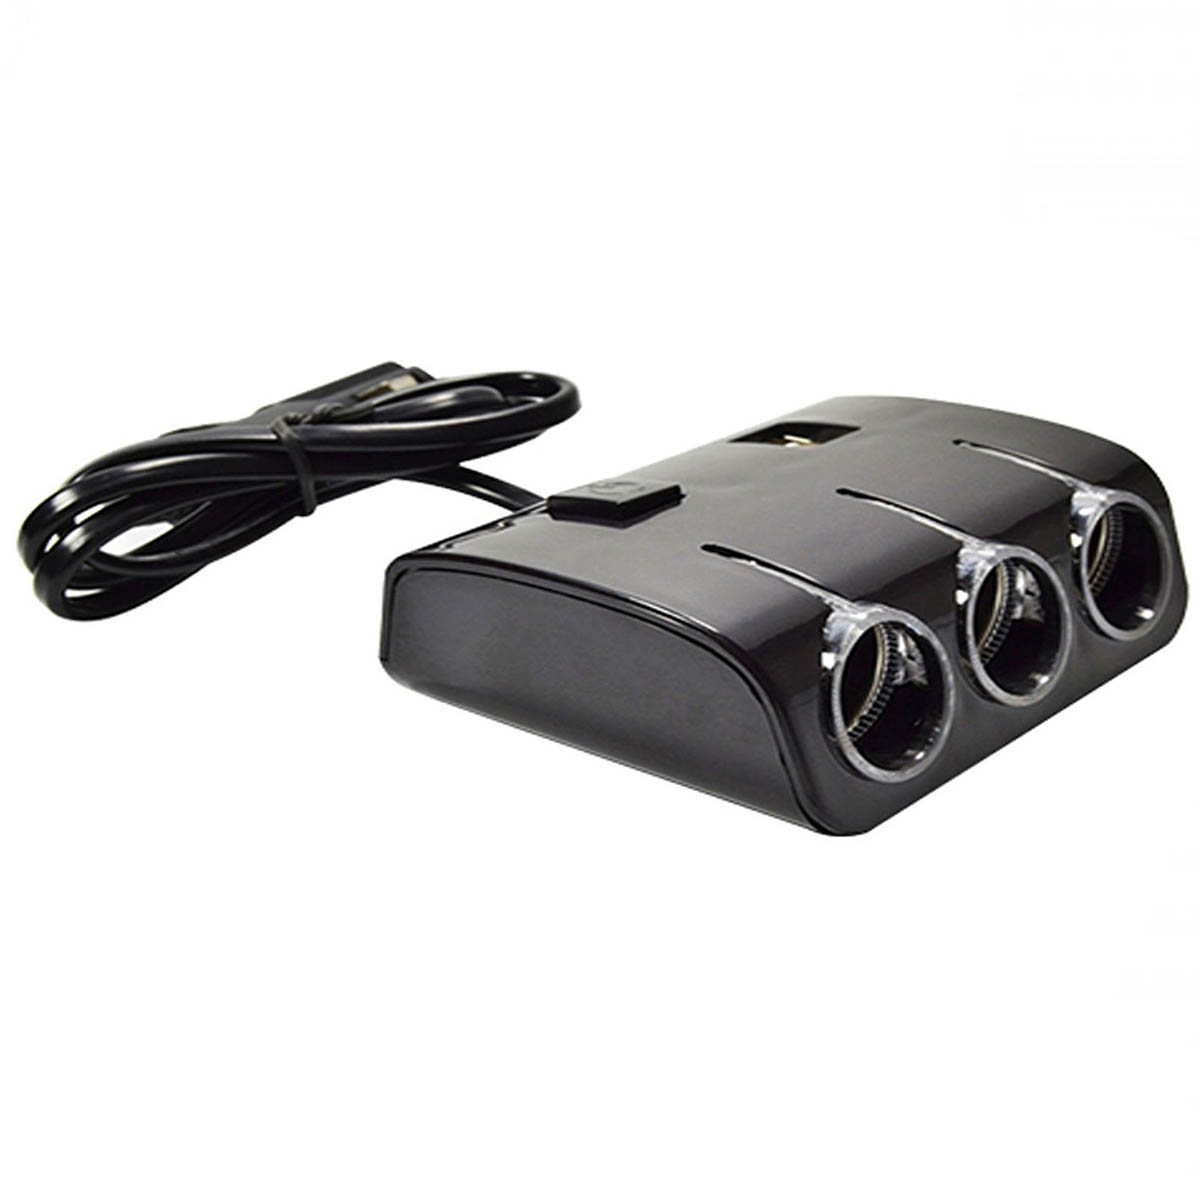 Автомобильный разветвитель OLESSON 1506, 120W, 12/24V, 3 выхода, 2 USB входа, кнопка выключения, цвет черный